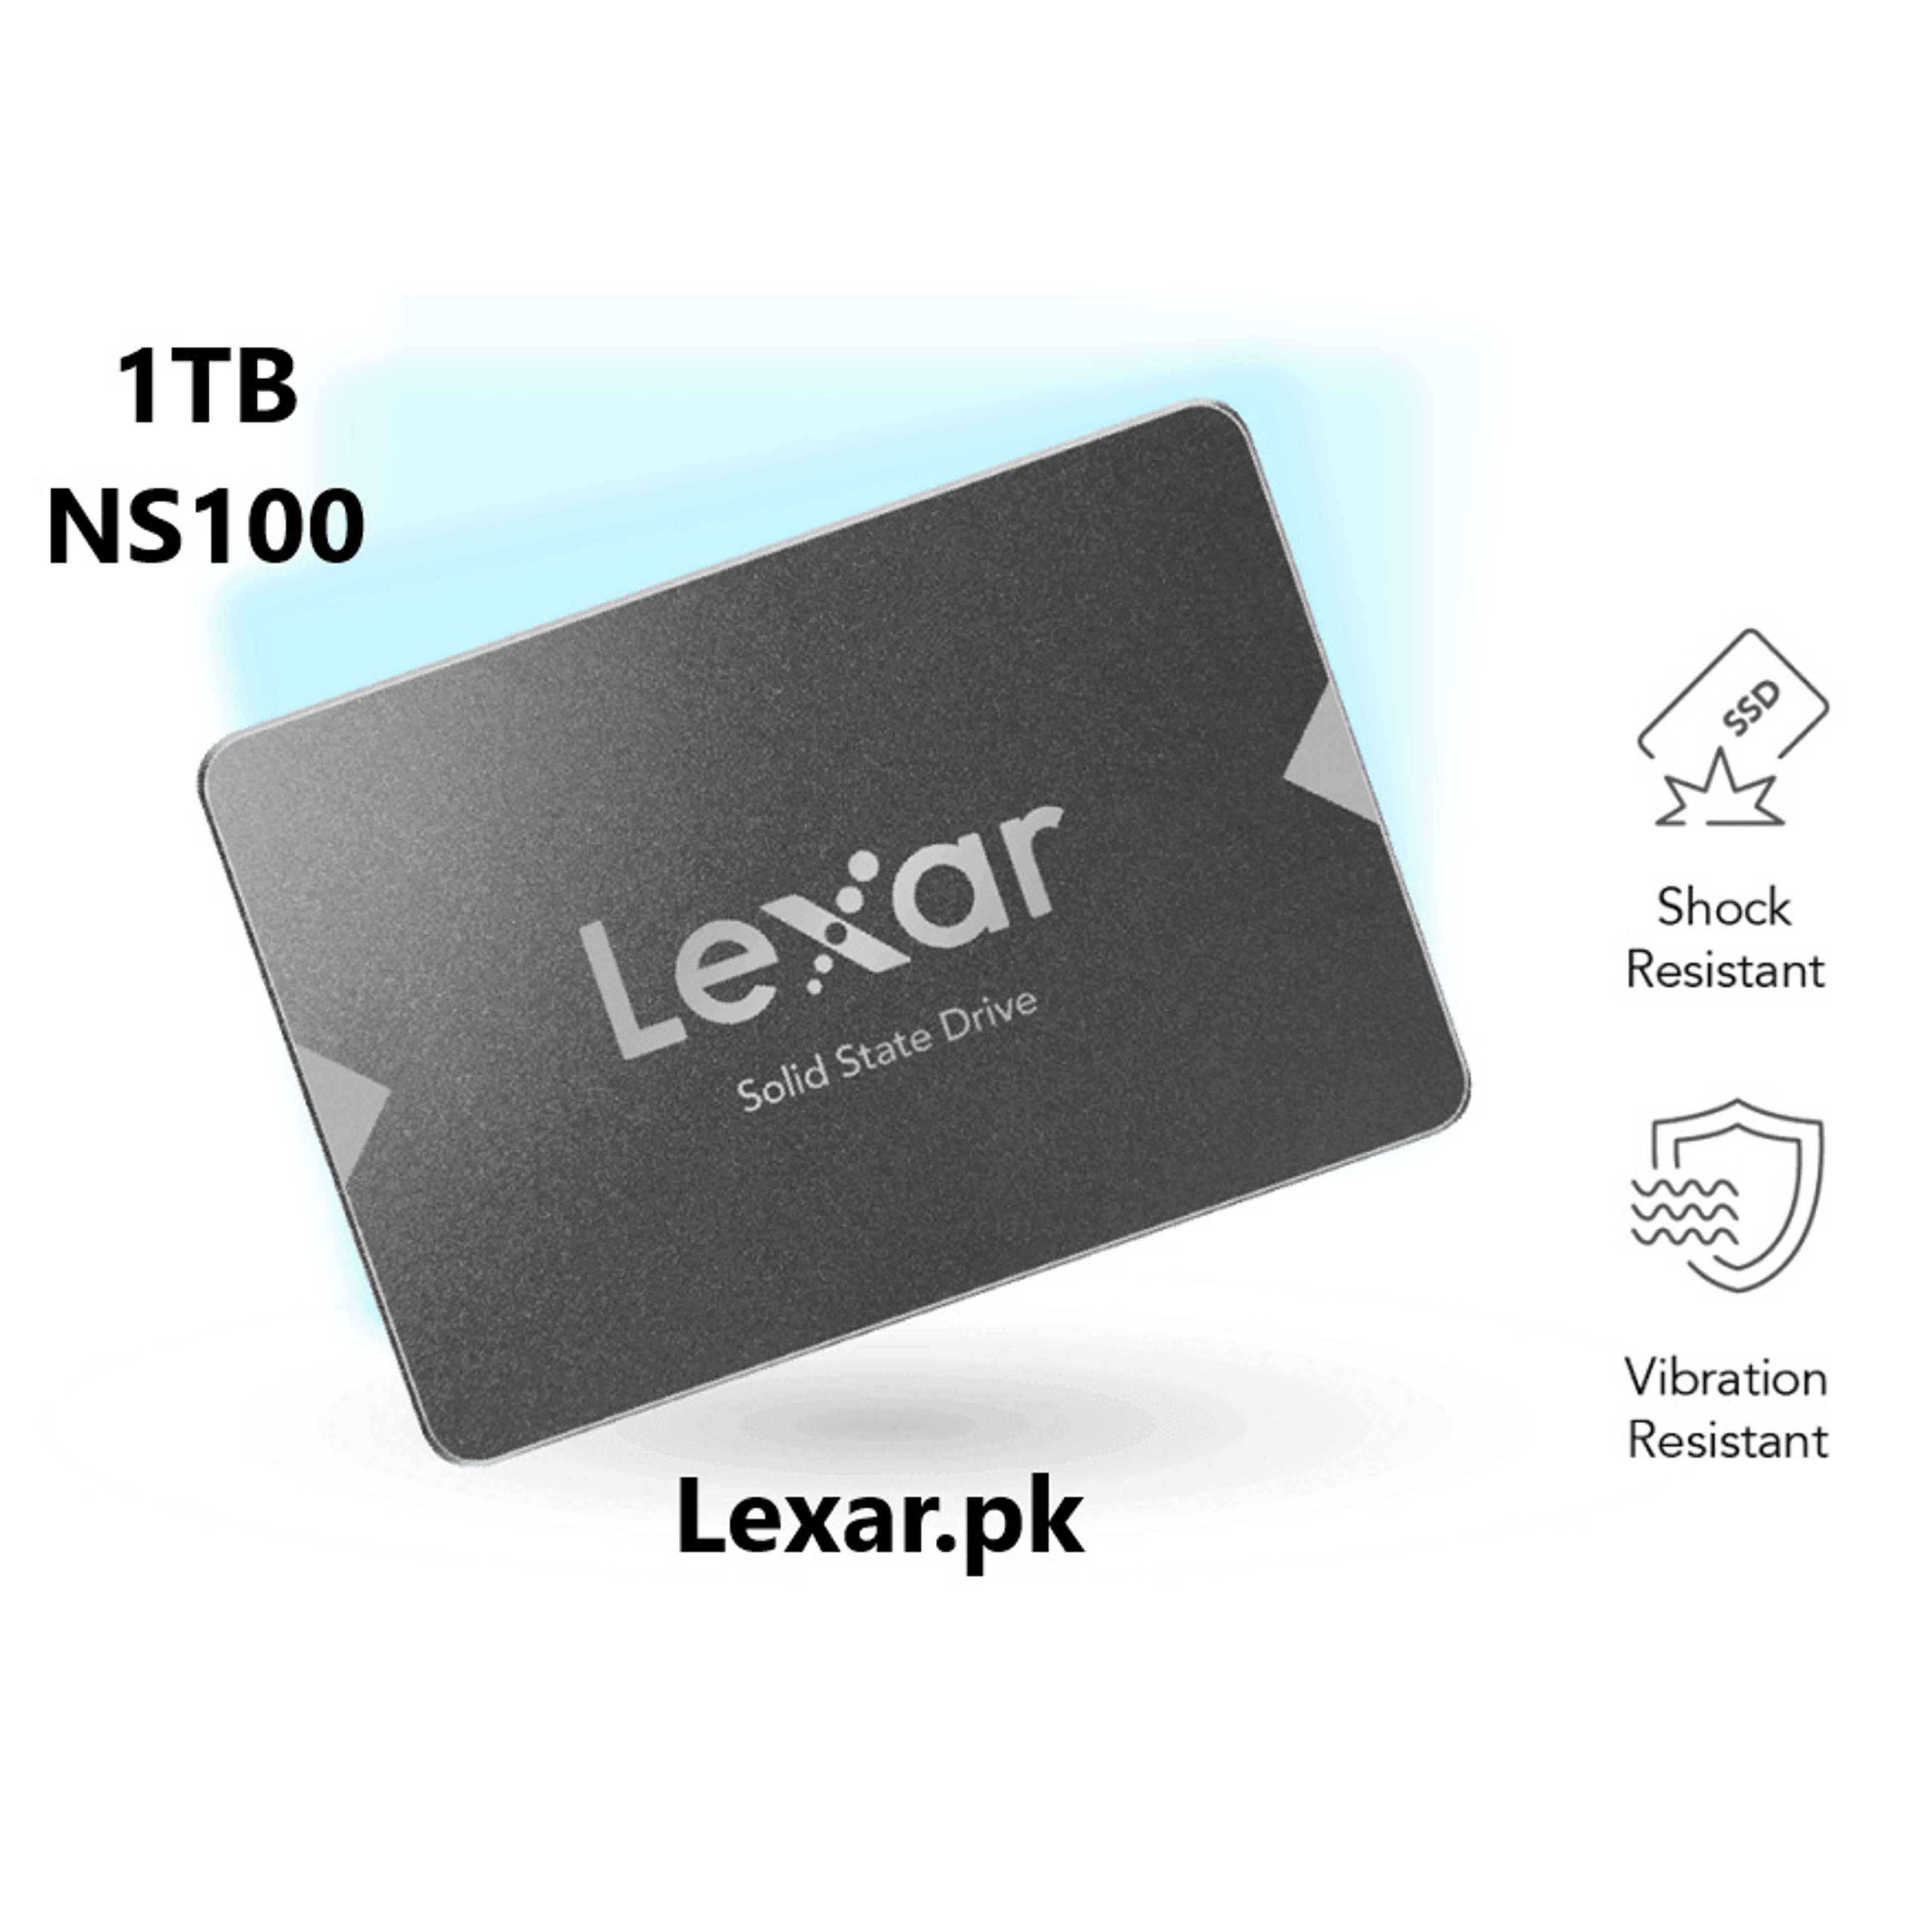 1TB Lexar SSD NS100 2.5 Sata III 6Gb/s Solid State Drive